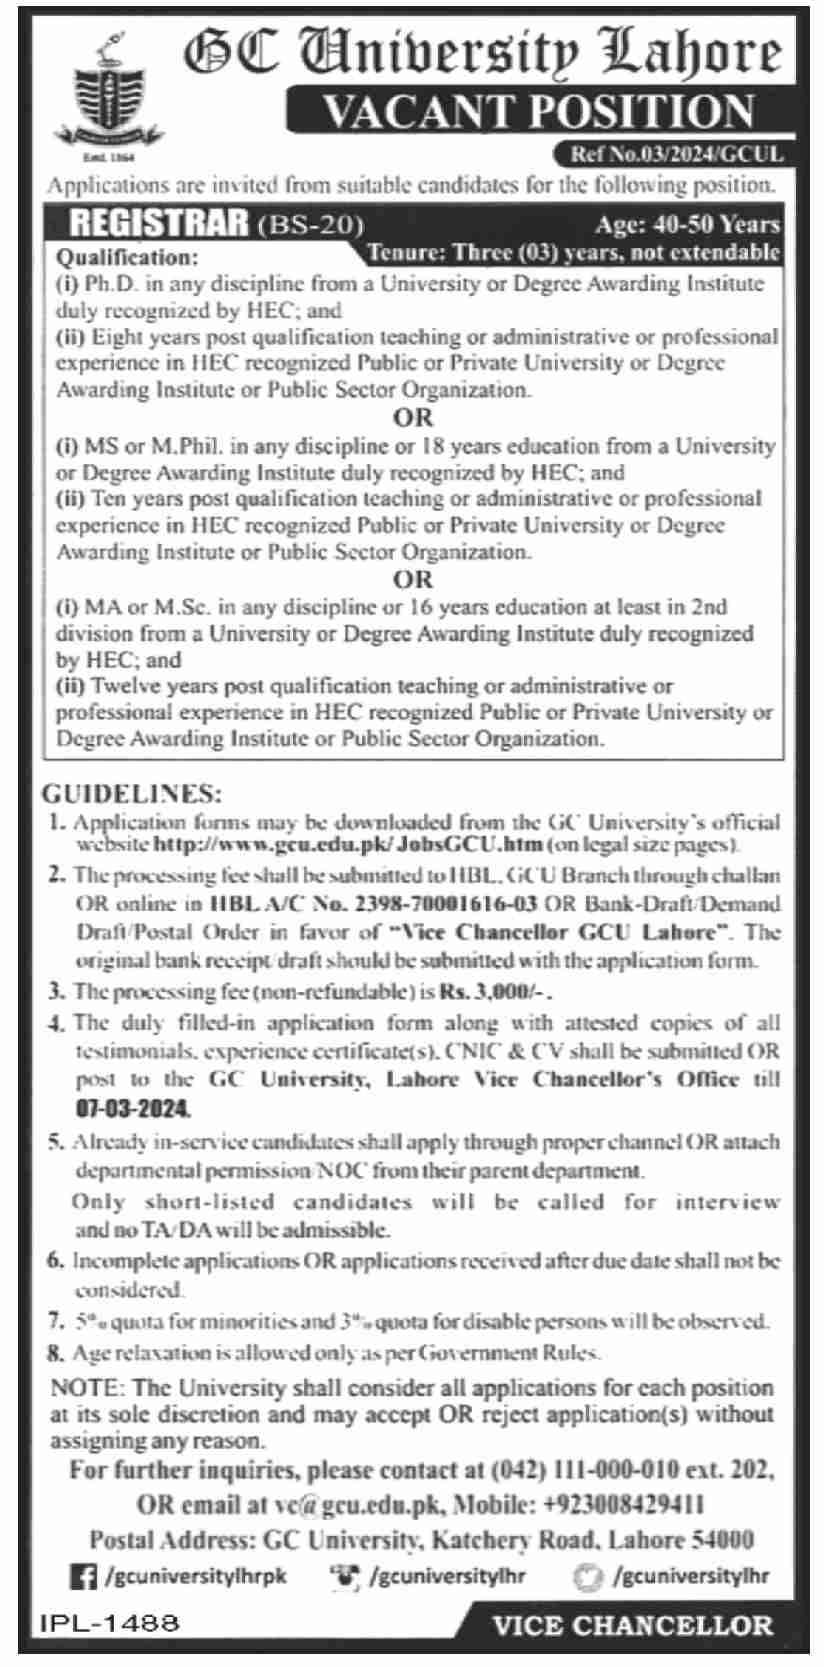 GC University Lahore Jobs 2024